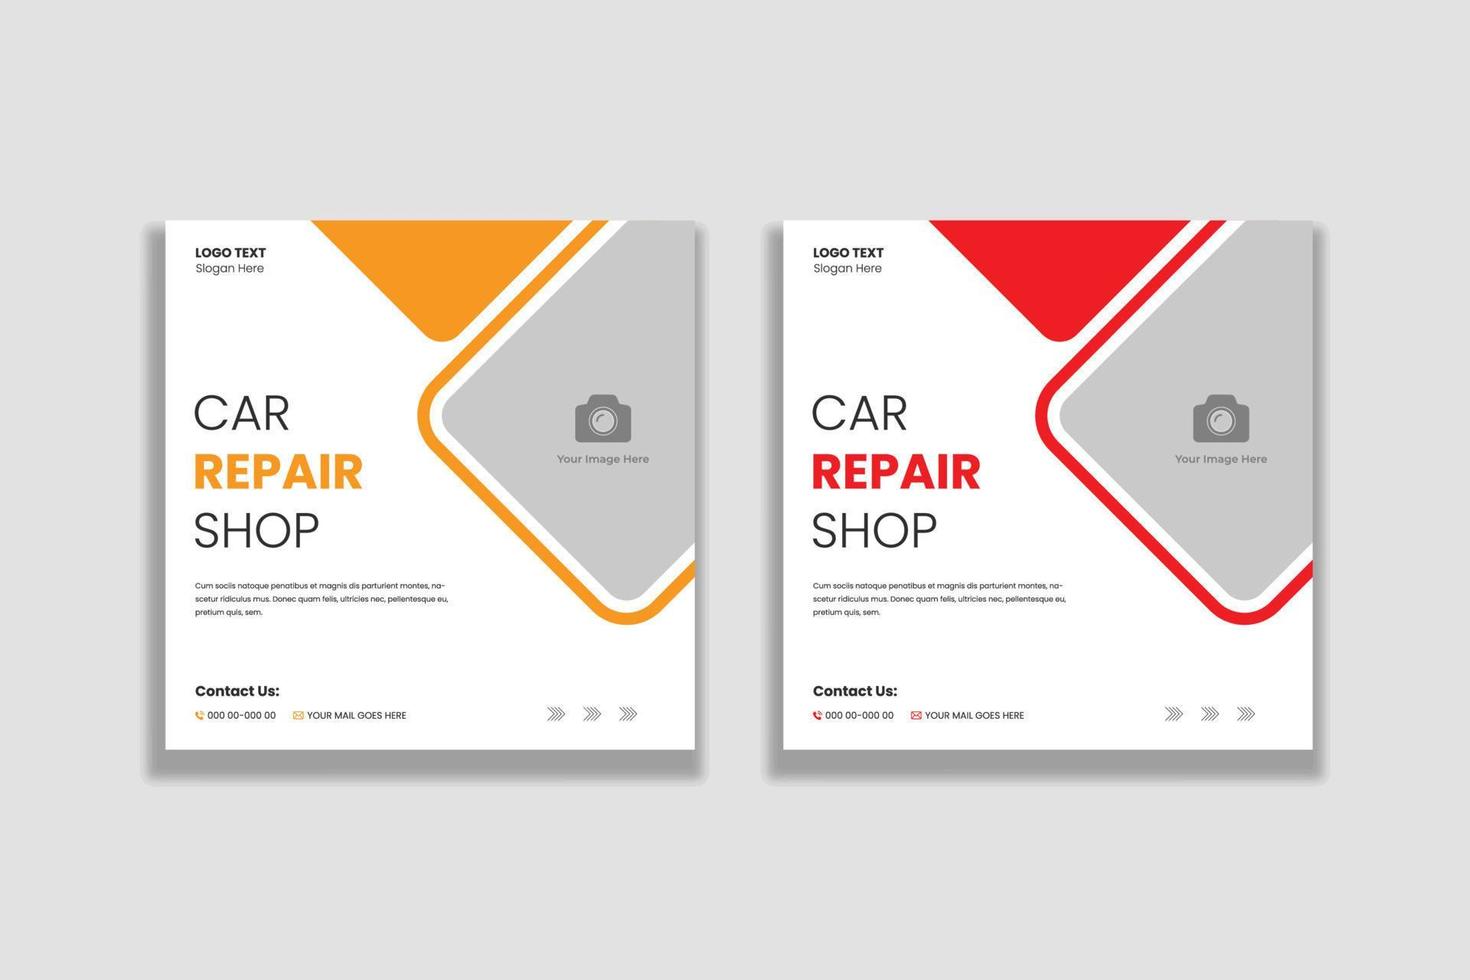 plantilla de banner de publicación de redes sociales de taller de reparación de automóviles y trabajadores vector